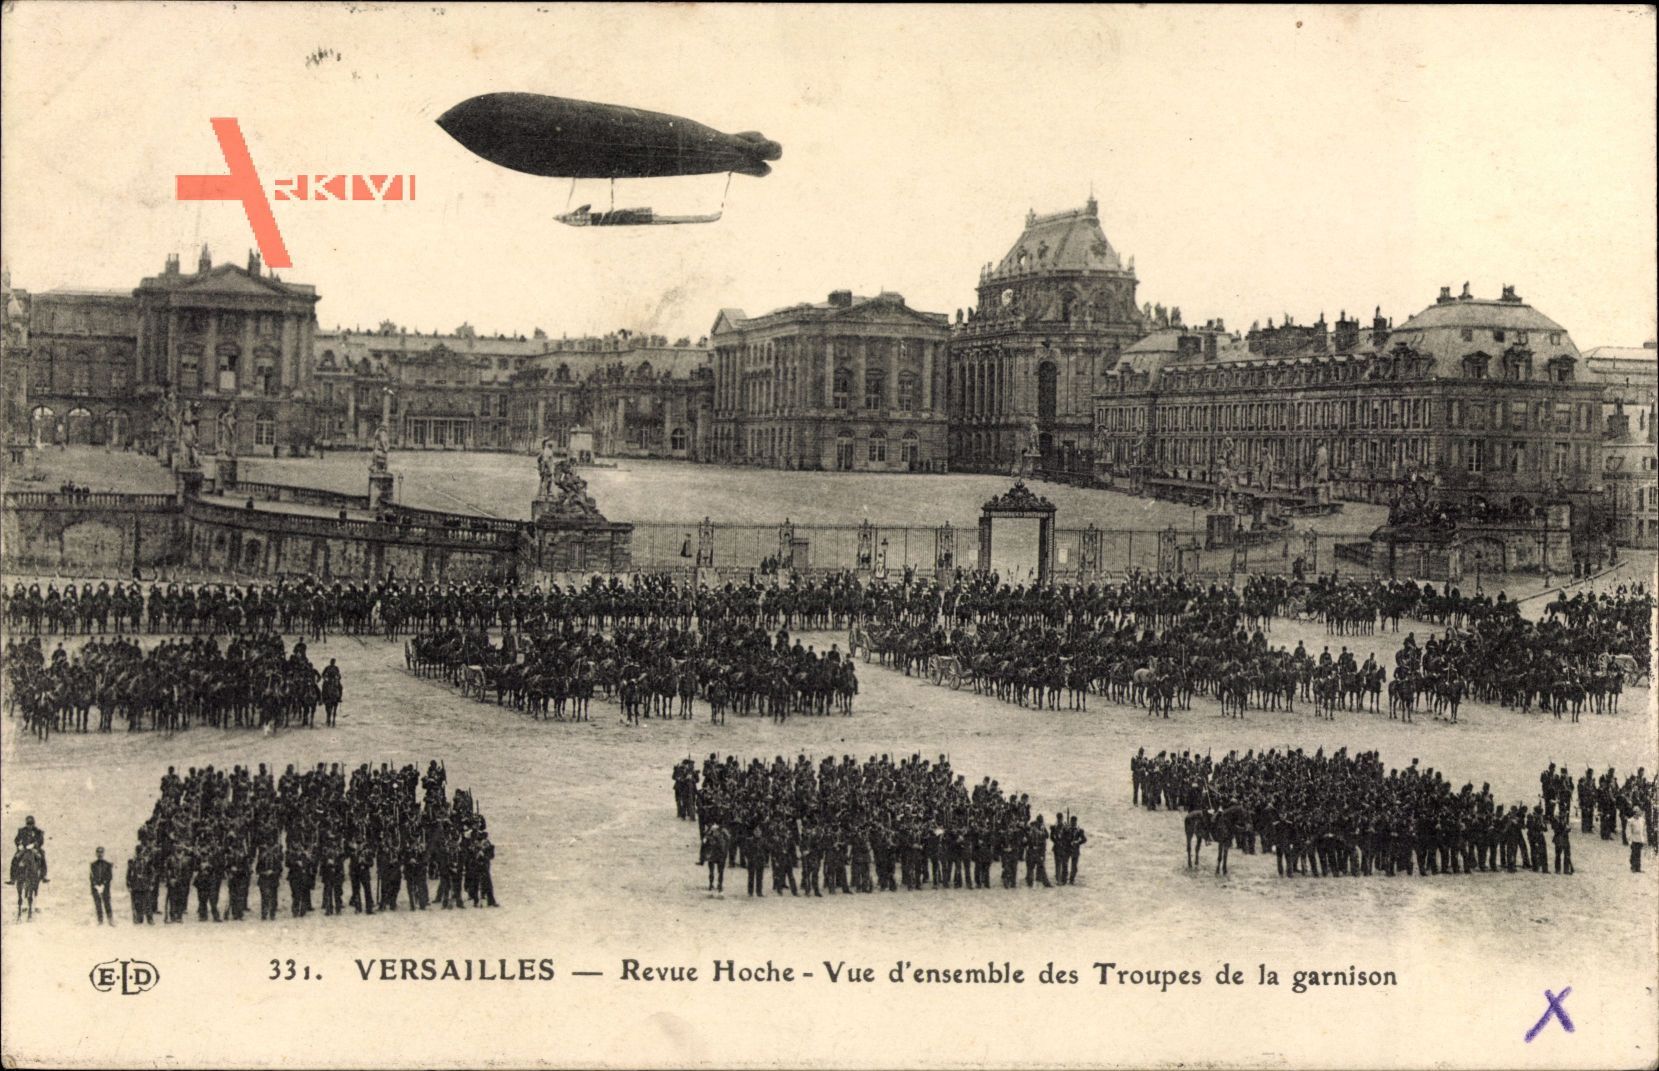 Versailles Yvelines, Revue Hoche, vue densemble des Troupes de la garnison